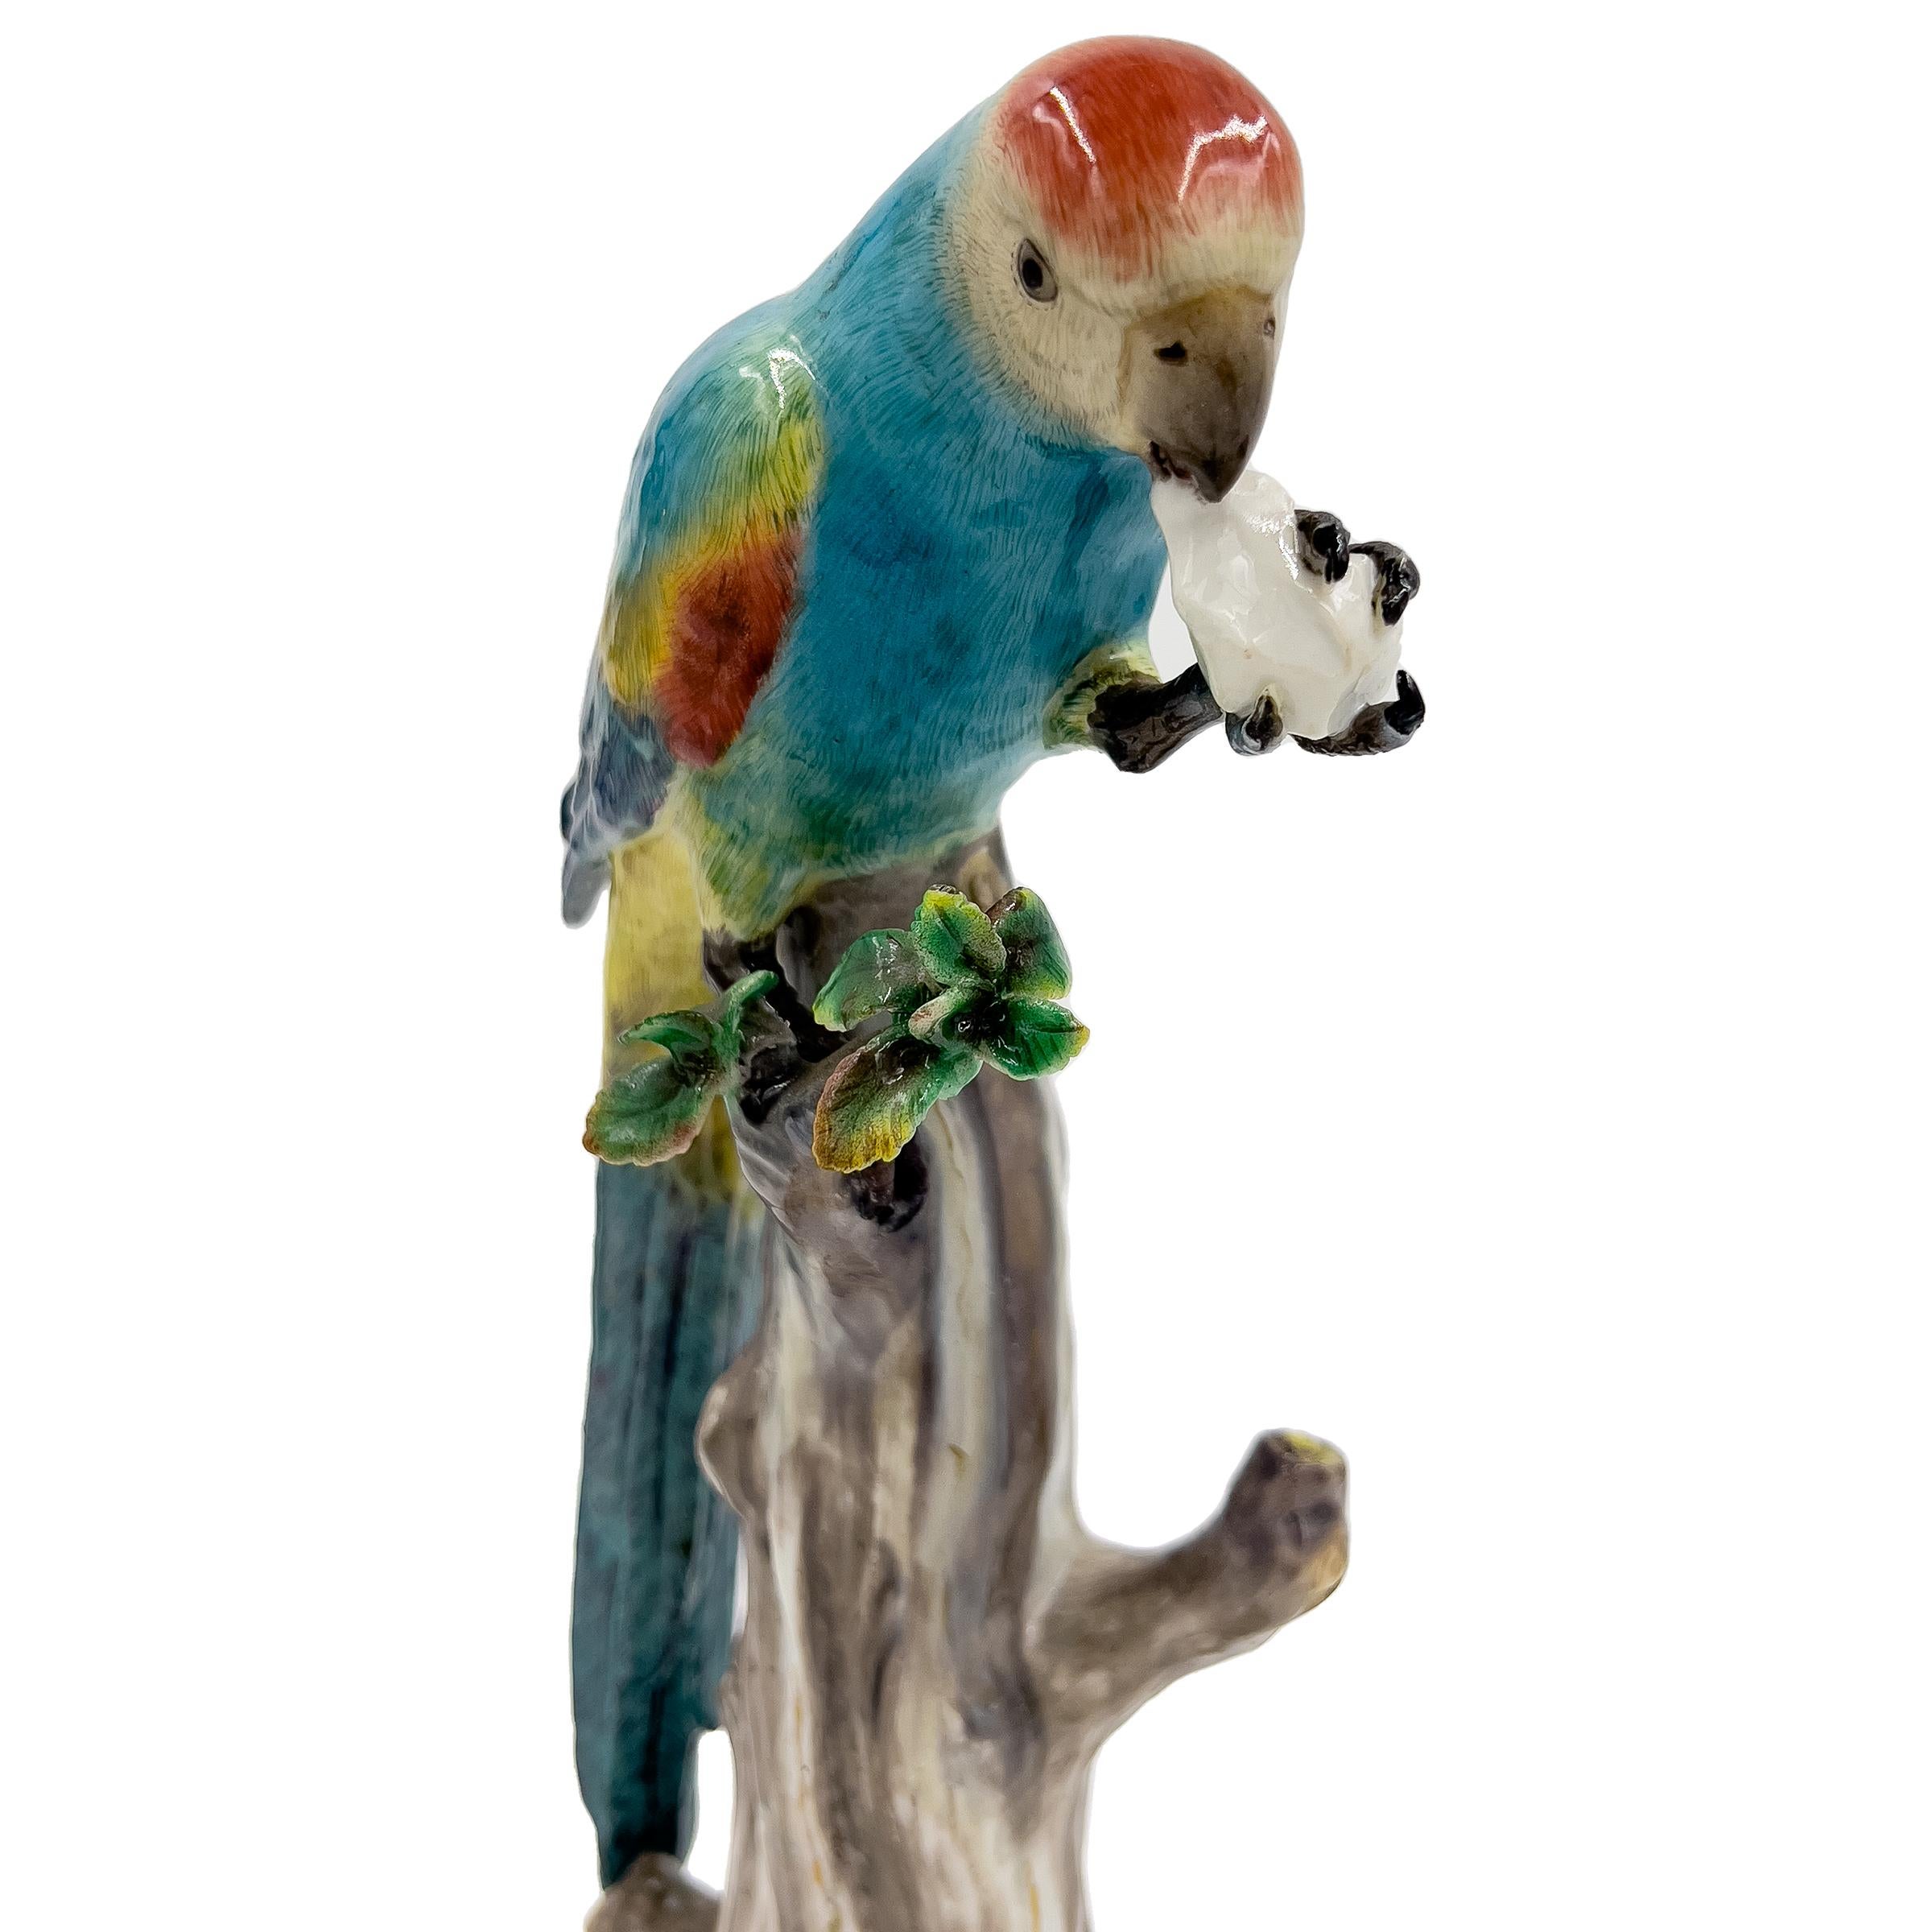 Porcelaine Figurine d'animal de Meissen du 19ème siècle représentant un perroquet coloré piqué sur un arbre